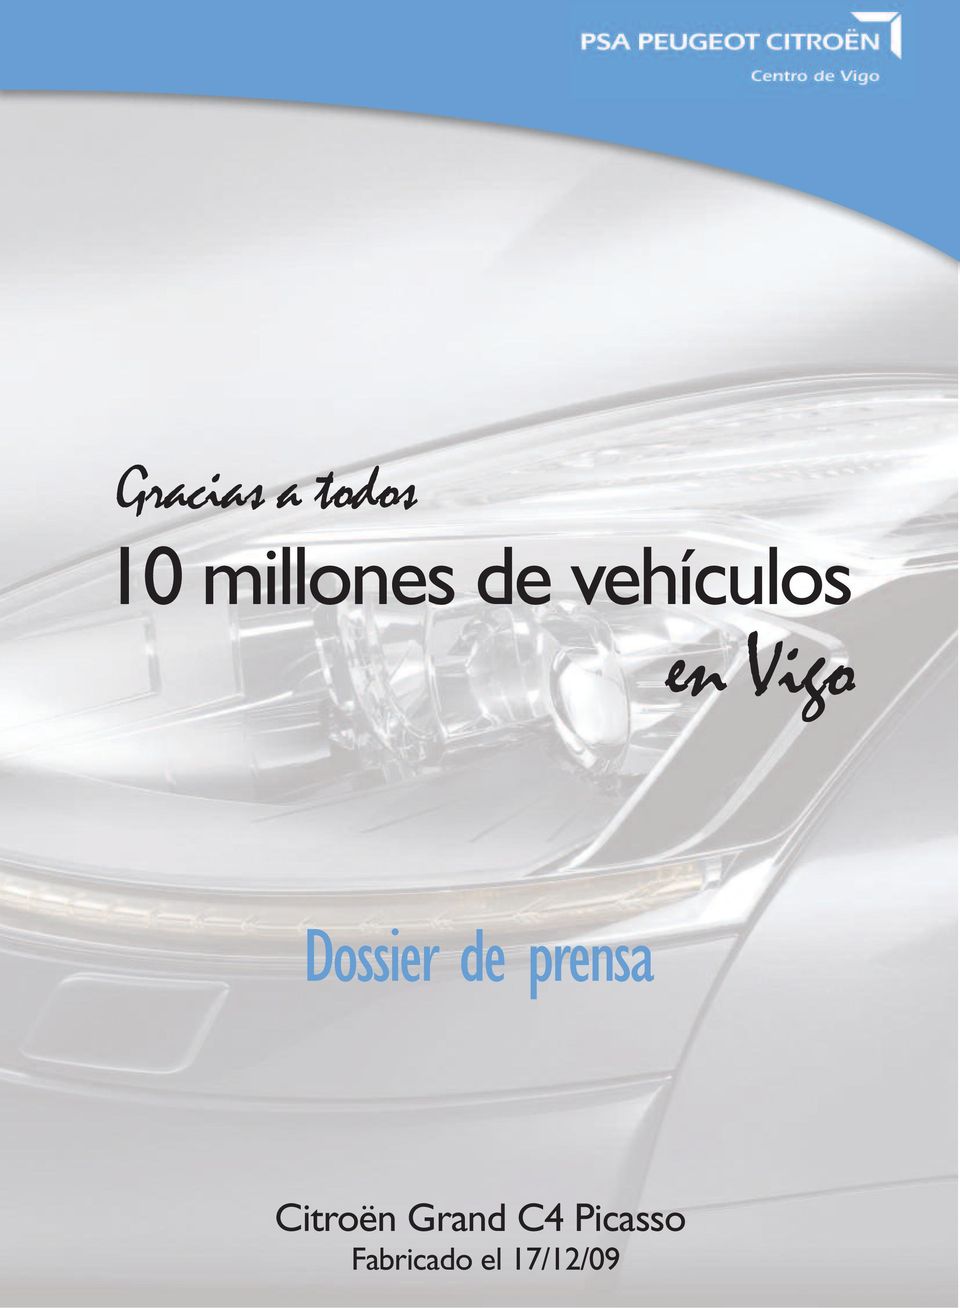 de prensa Citroën Grand C4